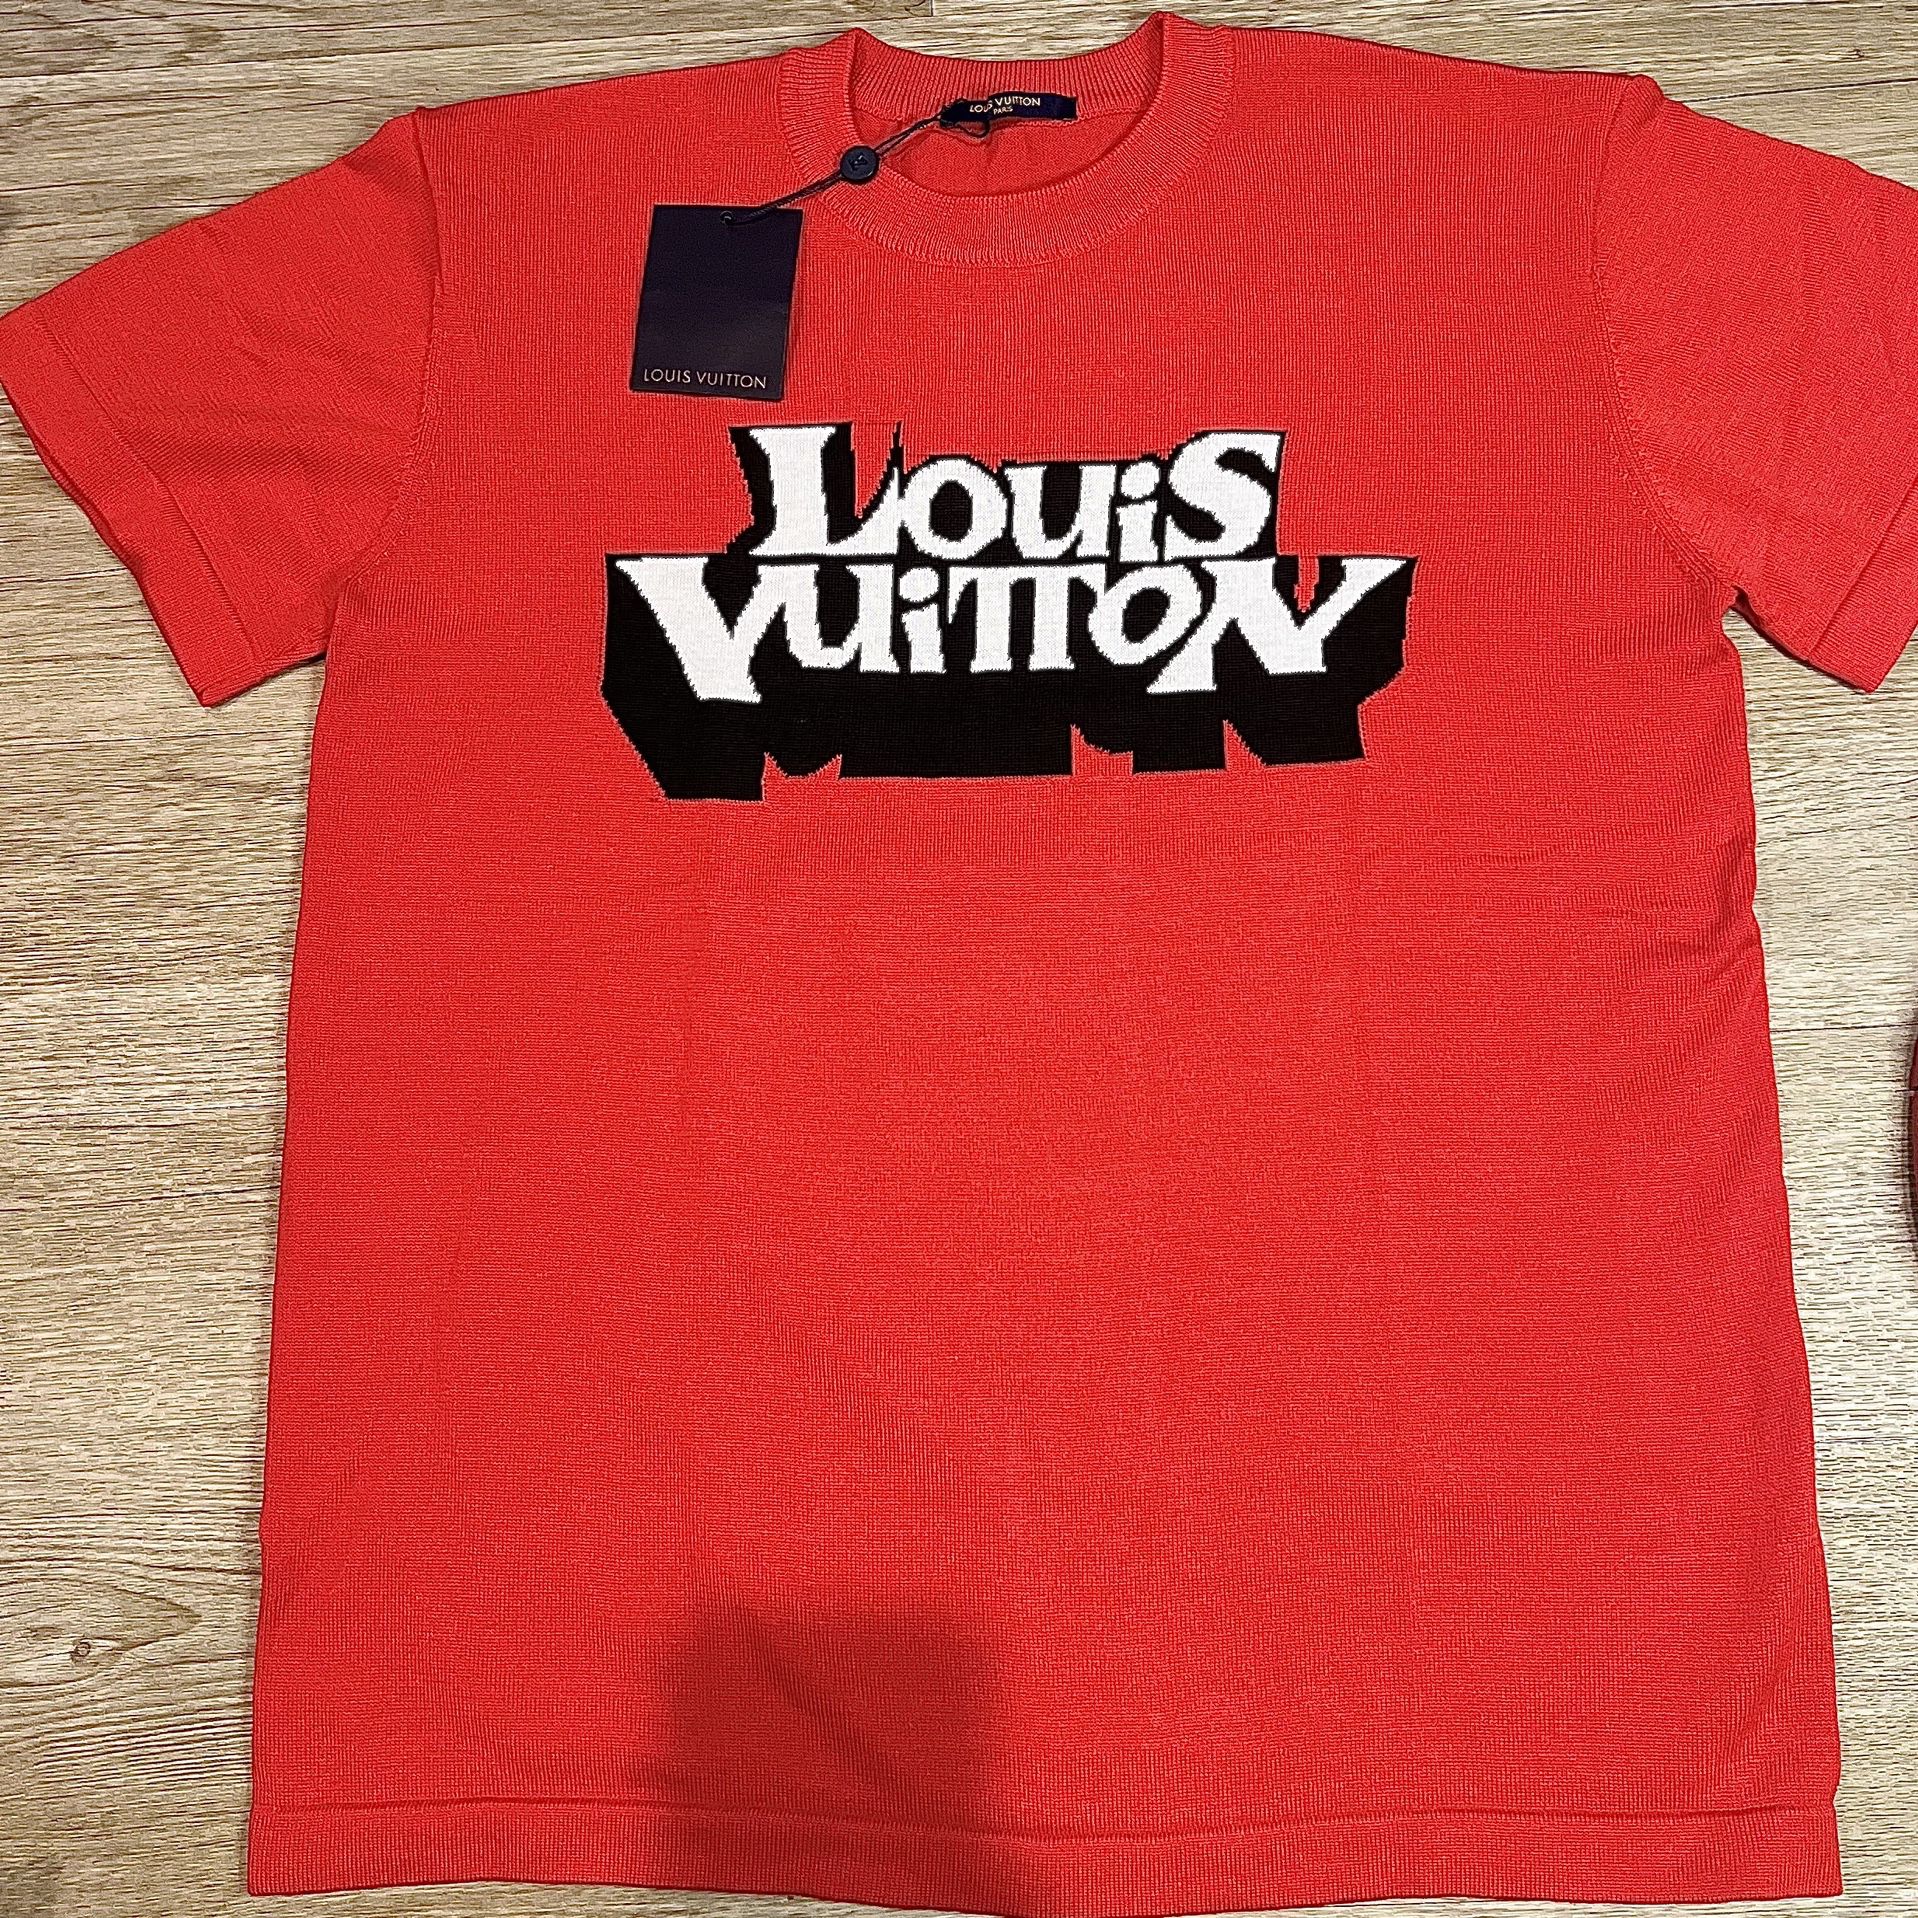 Louis Vuitton Louis Vuitton White Malletier Paris 1854 Graphic T-Shirt